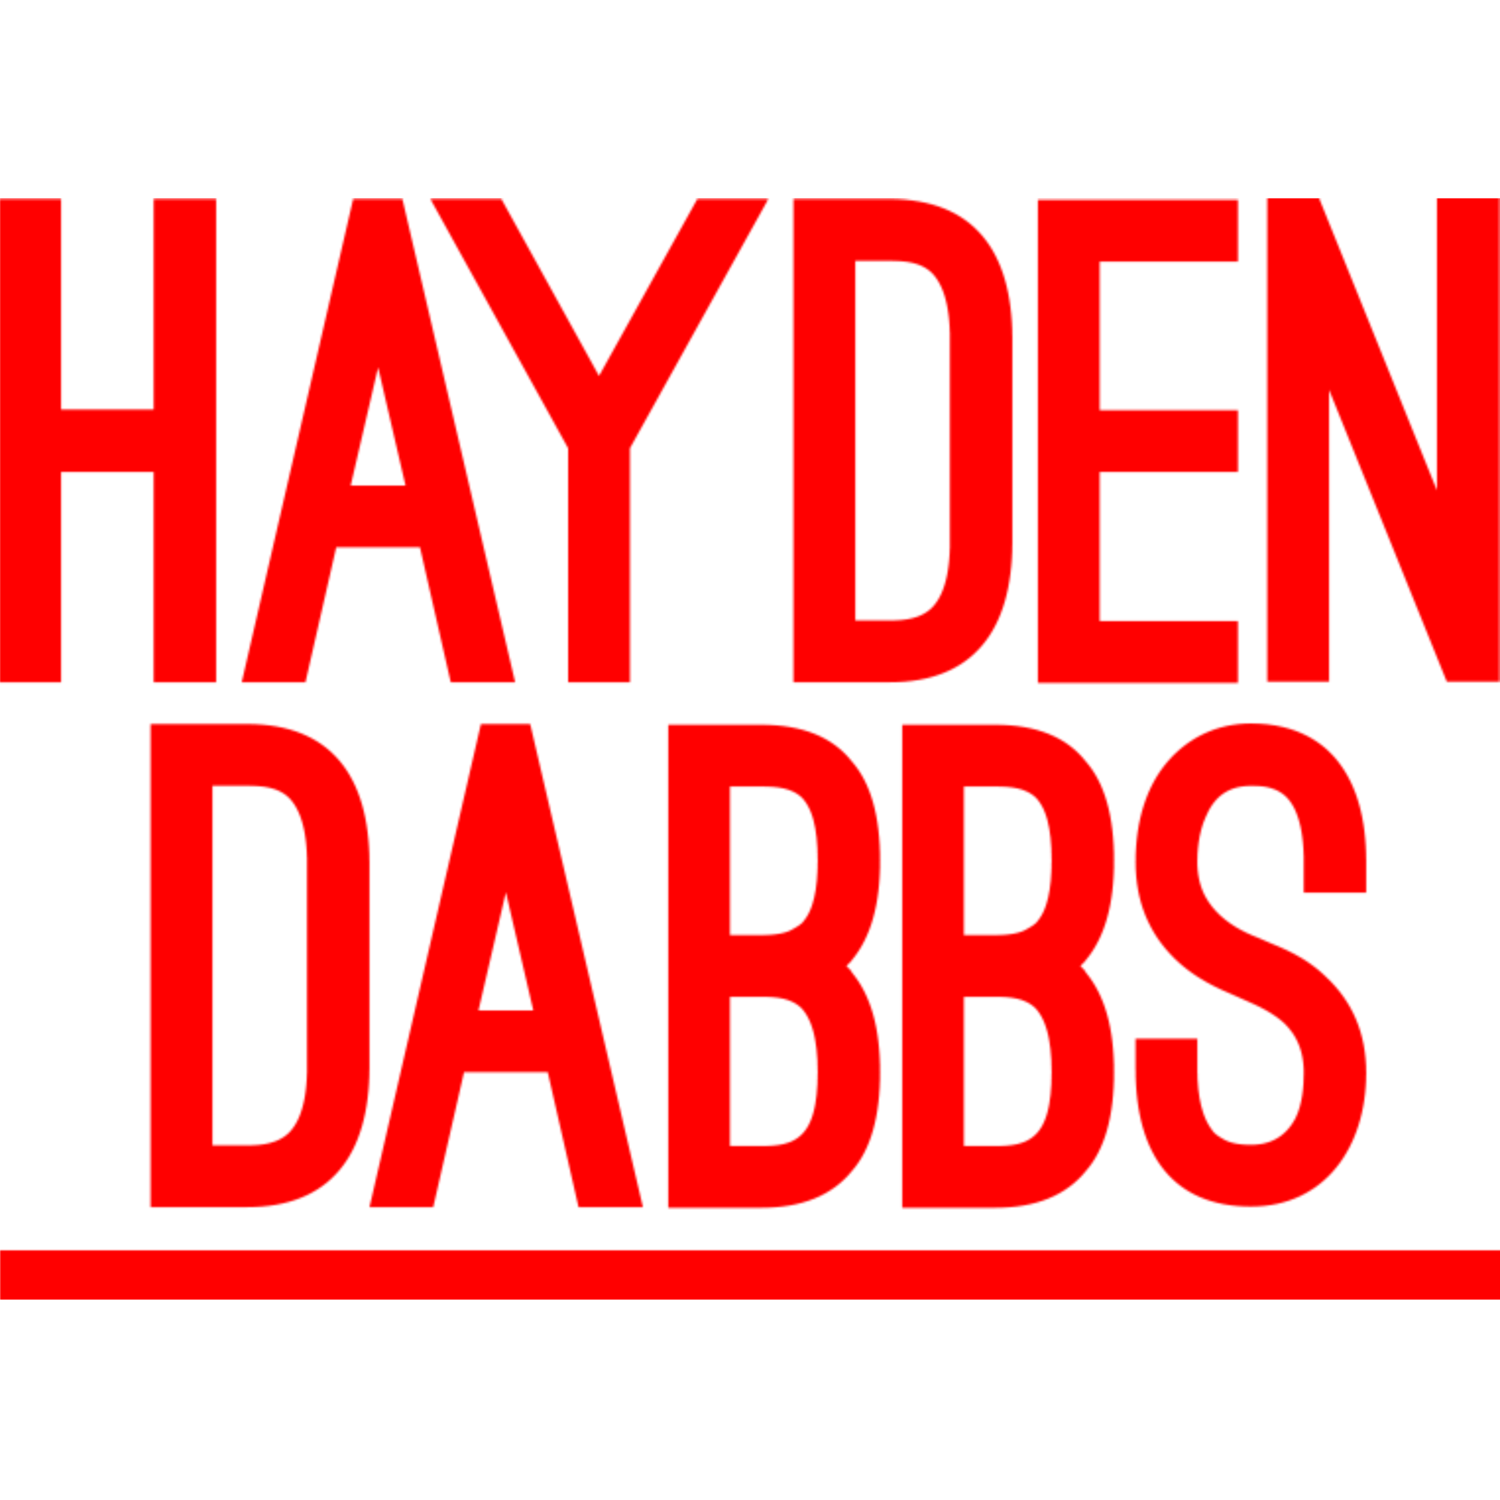 Hayden Dabbs